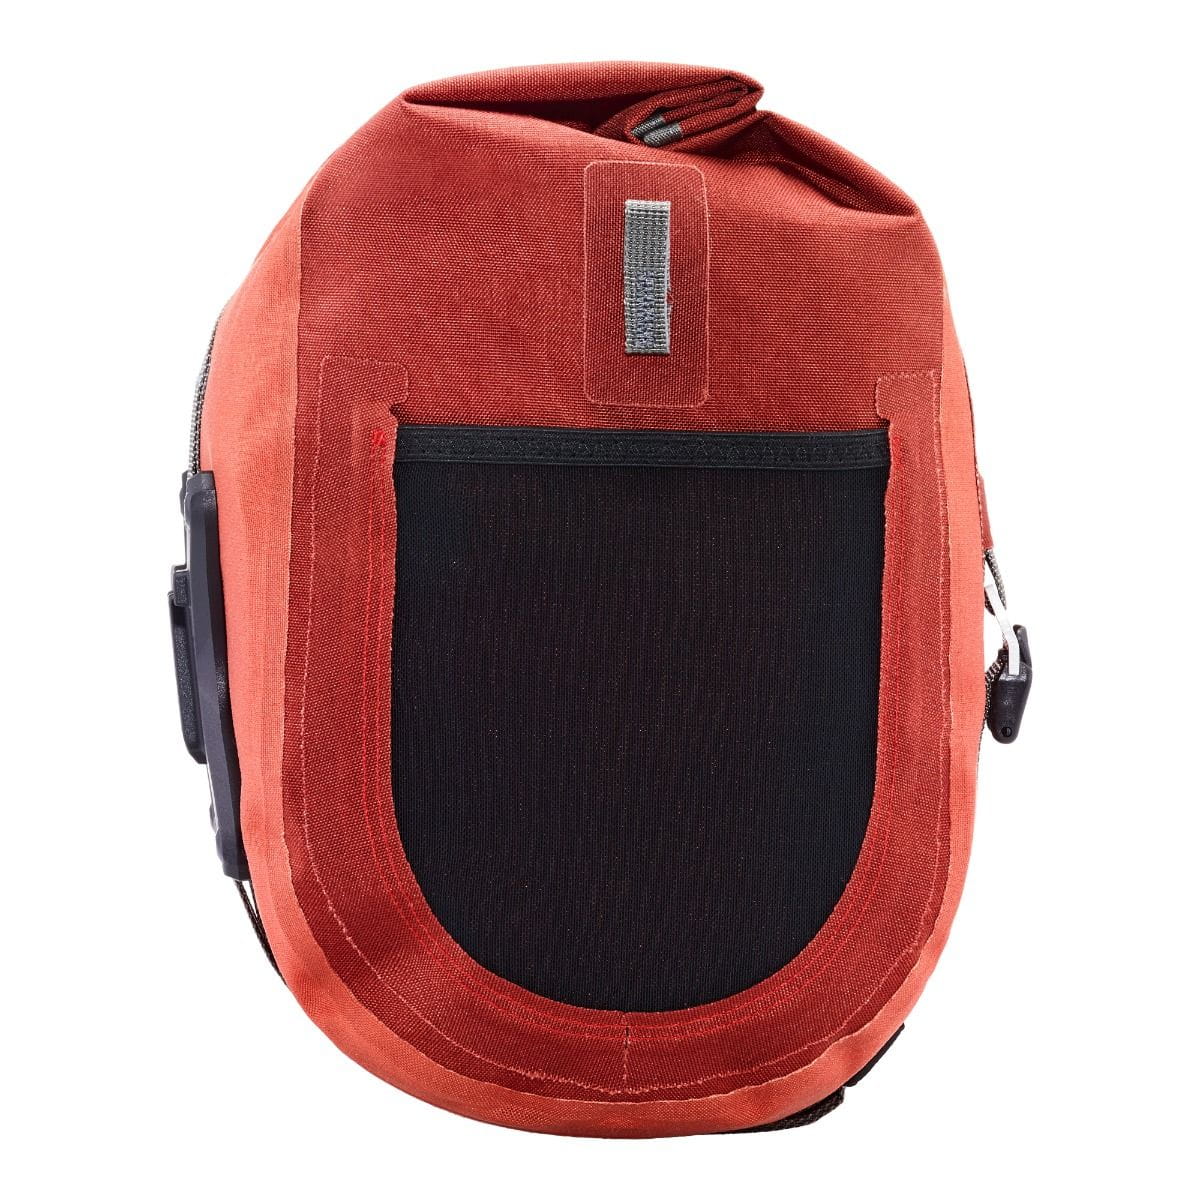 Ortlieb Handlebar-Pack Plus 11L Handlebar Bag